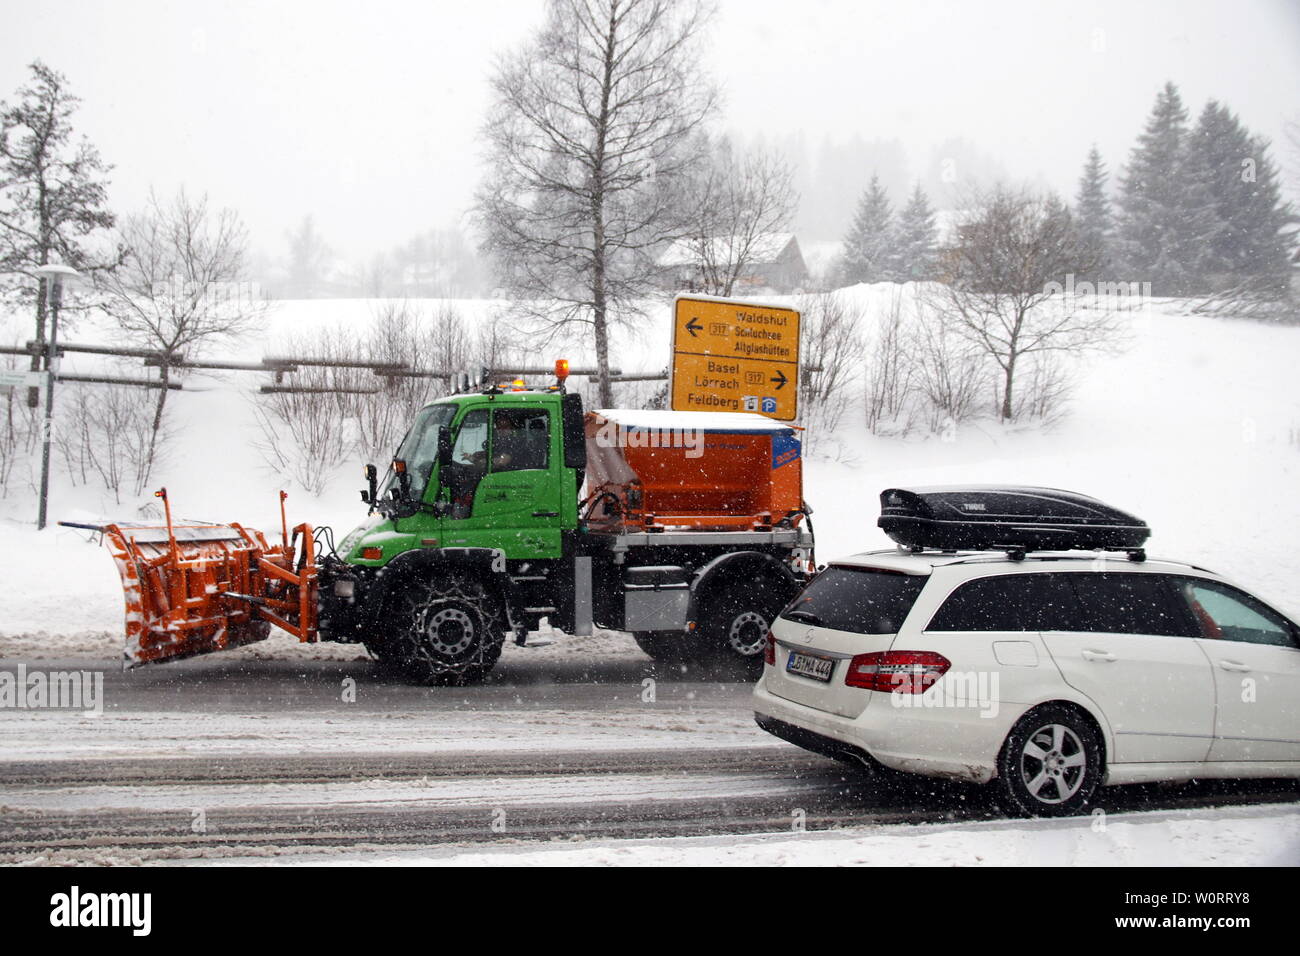 Wintereinbruch im Hochschwarzwald (Baden-Württemberg) - In der Feldbergregion ist der Winter mit kräftigen Schneeschauern zurückgekehrt. Wie hier in Feldberg-Bärental kommt es nach massiven Schneefällen am Samstagvormittag zu erheblichen Verkehrsproblemen. Räumfahrzeuge sind im Einsatz, doch die steckengebliebenen Autofahrer verhindern die Räumarbeiten. Busse mussten Schneeketten montieren, querstehende LKW´s mit glatten Reifen taten ihr übriges. Stock Photo